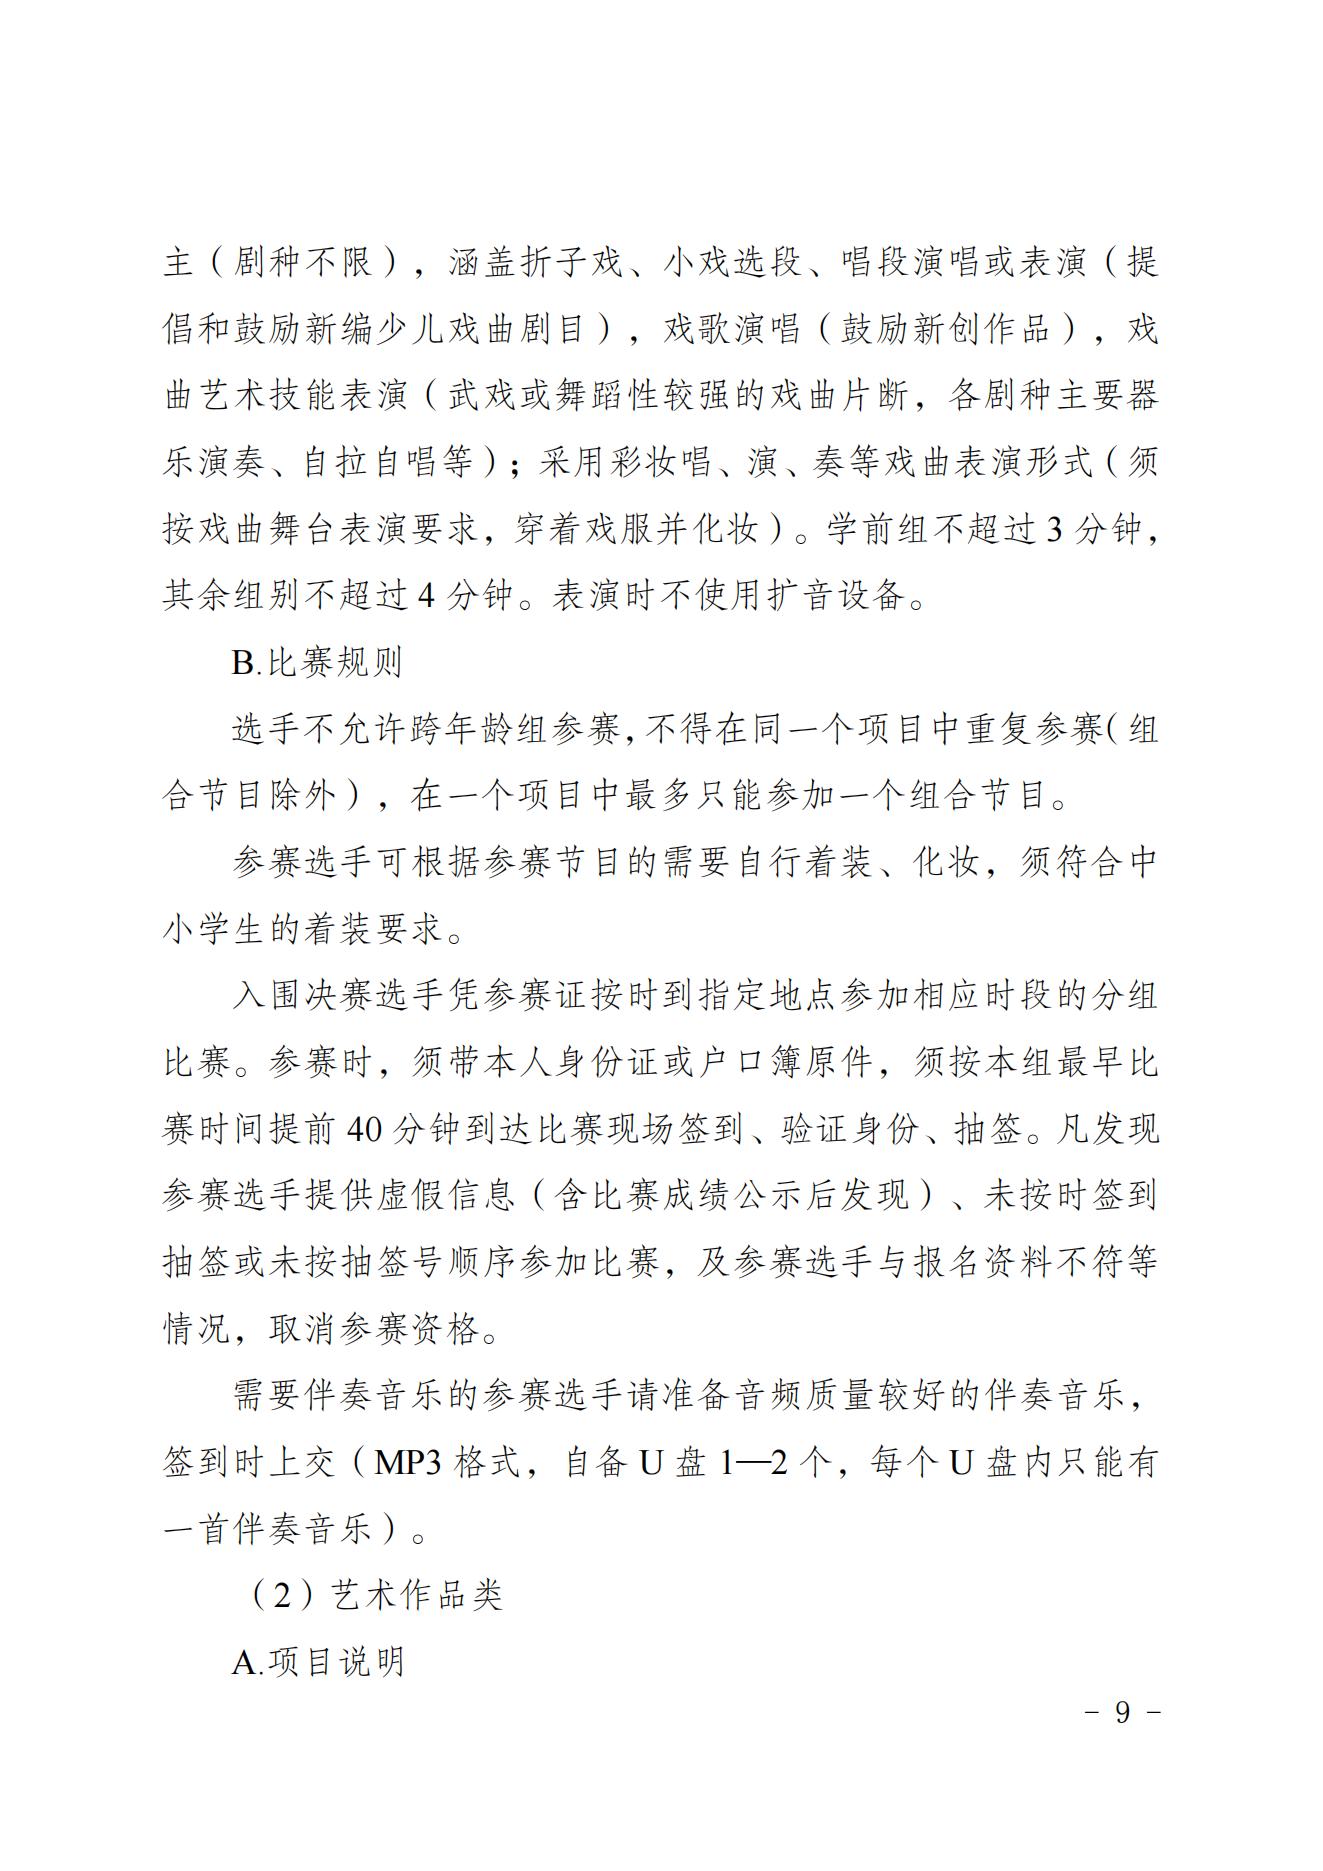 2022共青团重庆市委关于印发重庆市第十七届中小学生才艺大赛活动方案的通知 第9张